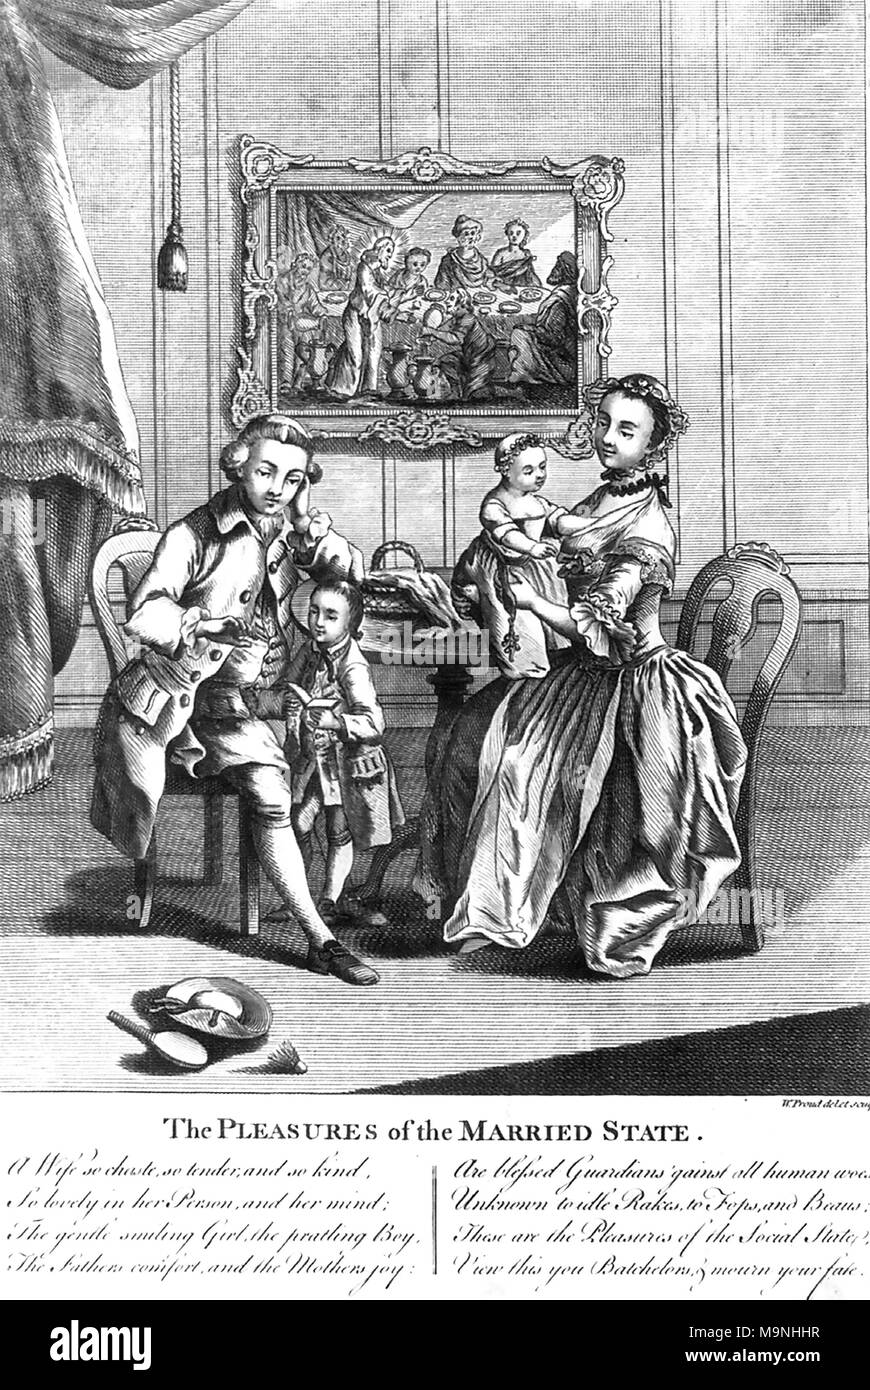 Die FREUDEN DER EHE Gravur ungefähr 1780 zeigt eine glückliche georgischen Familie Szene. Auf dem Boden sind die Schläger und Ball für ein Spiel von federball zusammen mit einem Outdoor Hut. Stockfoto